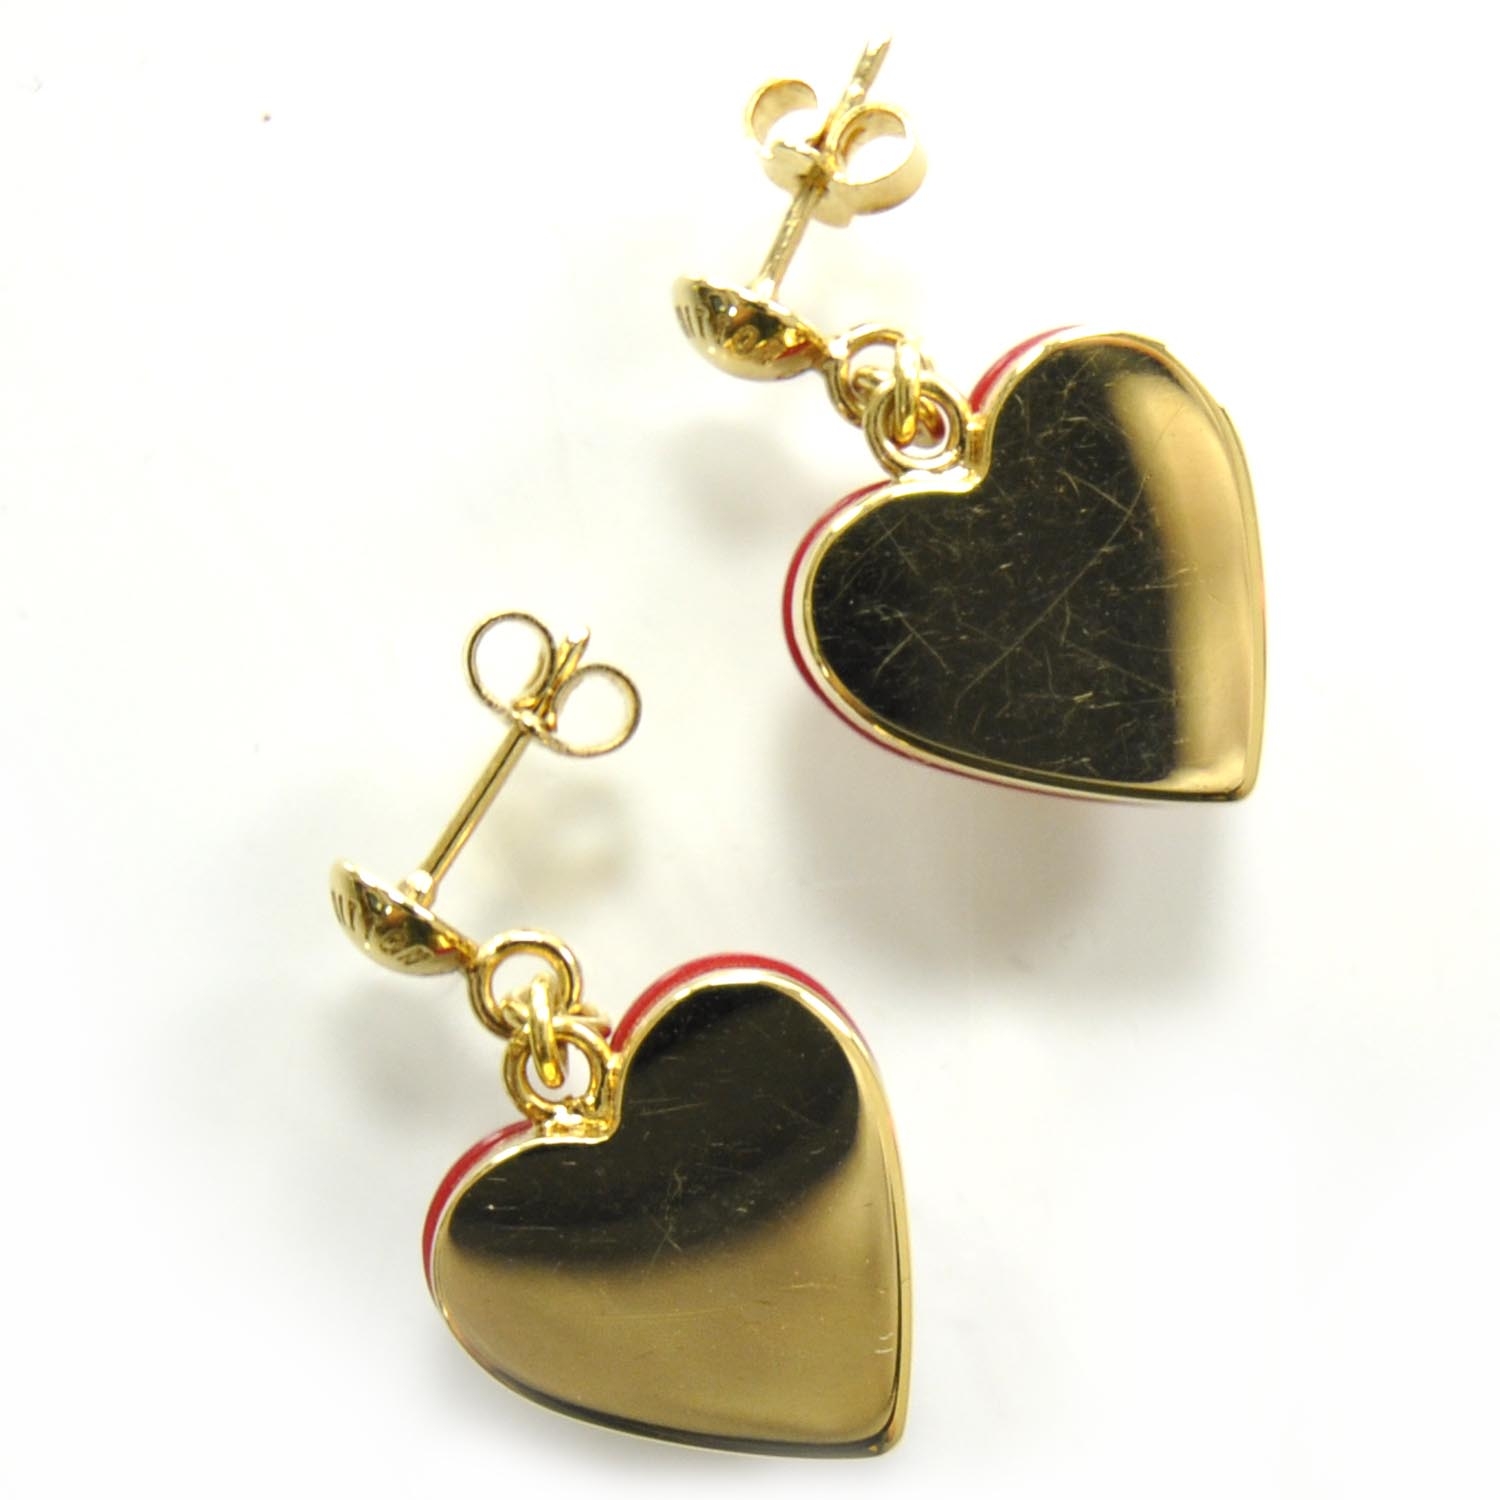 LOUIS VUITTON Fall In Love Heart Earrings PM Gold 867425